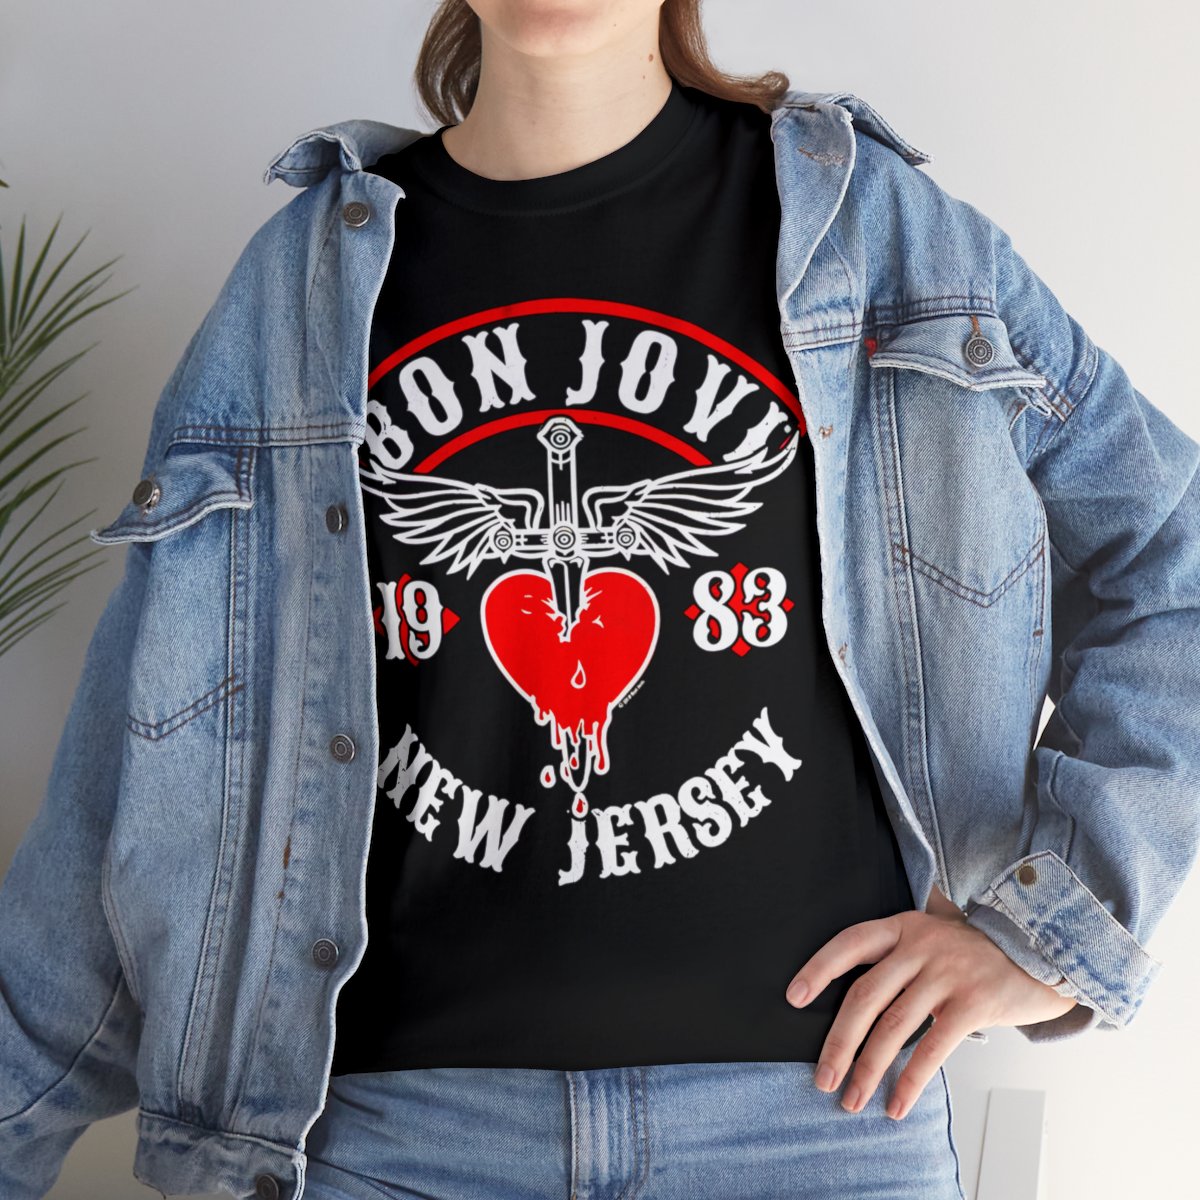 Bon Jovi New Jersey 1983 Shirt Rock Band Album Music Concert Tour Merch T-Shirt Unisex Heavy Cotton Tee